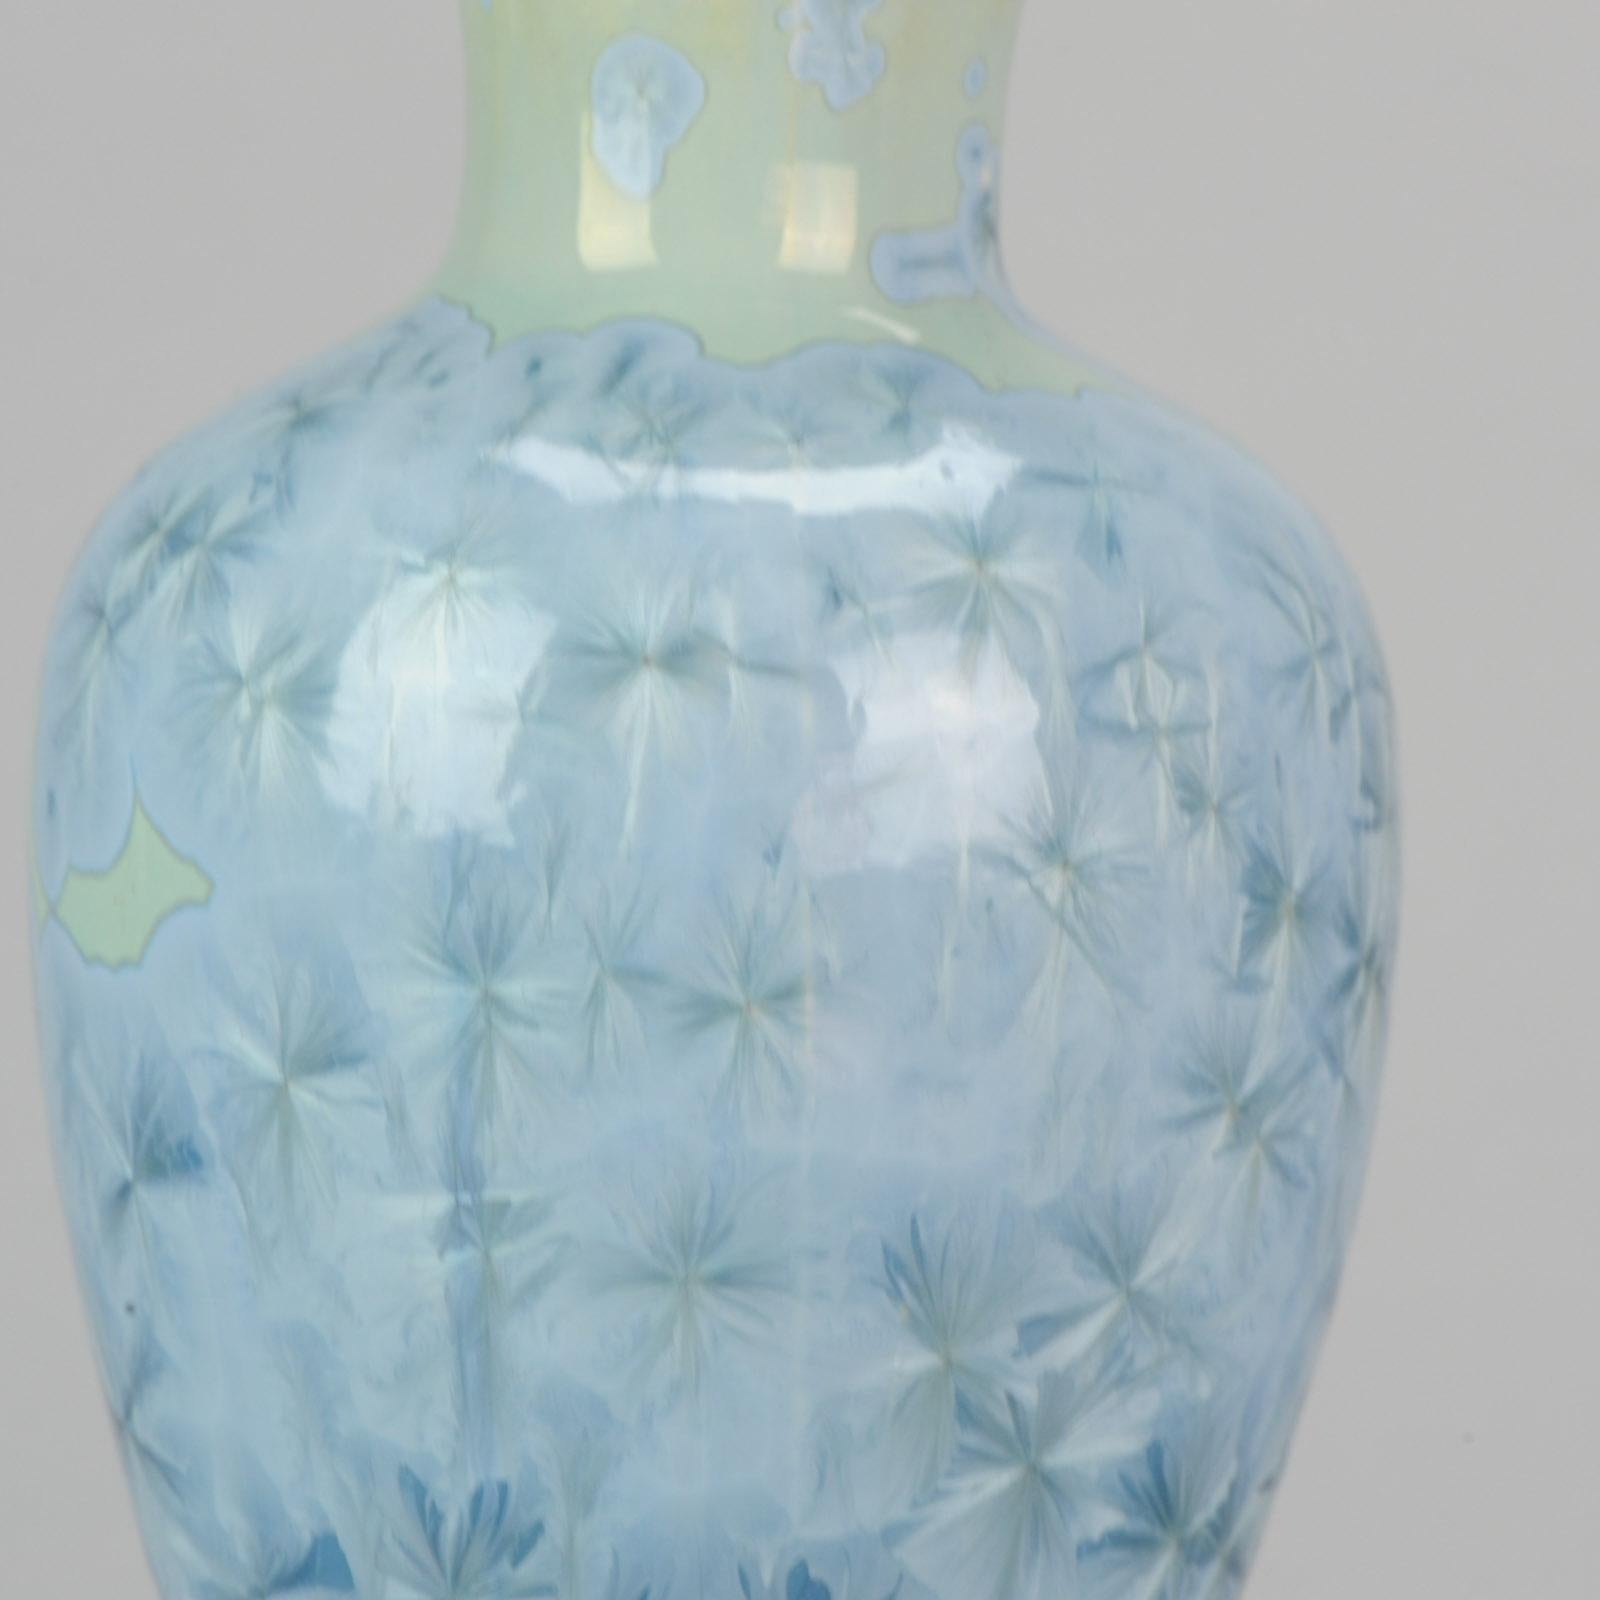 Shiwan 20th Century PRoC 1970-1980 Chinese Porcelain Vase Crystalline Glaz 3